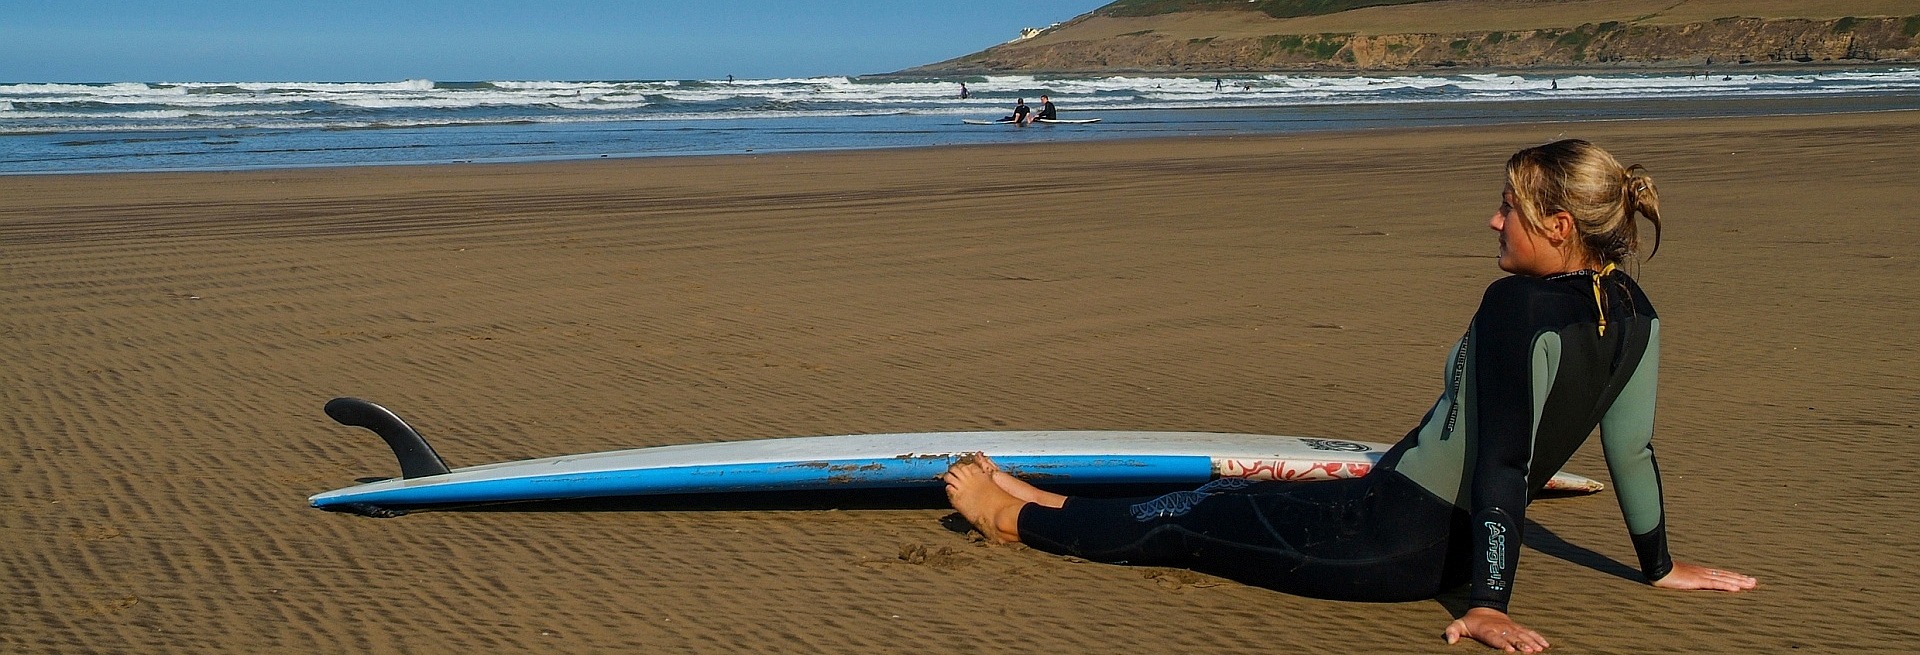 Devon Surfing Beaches Blog